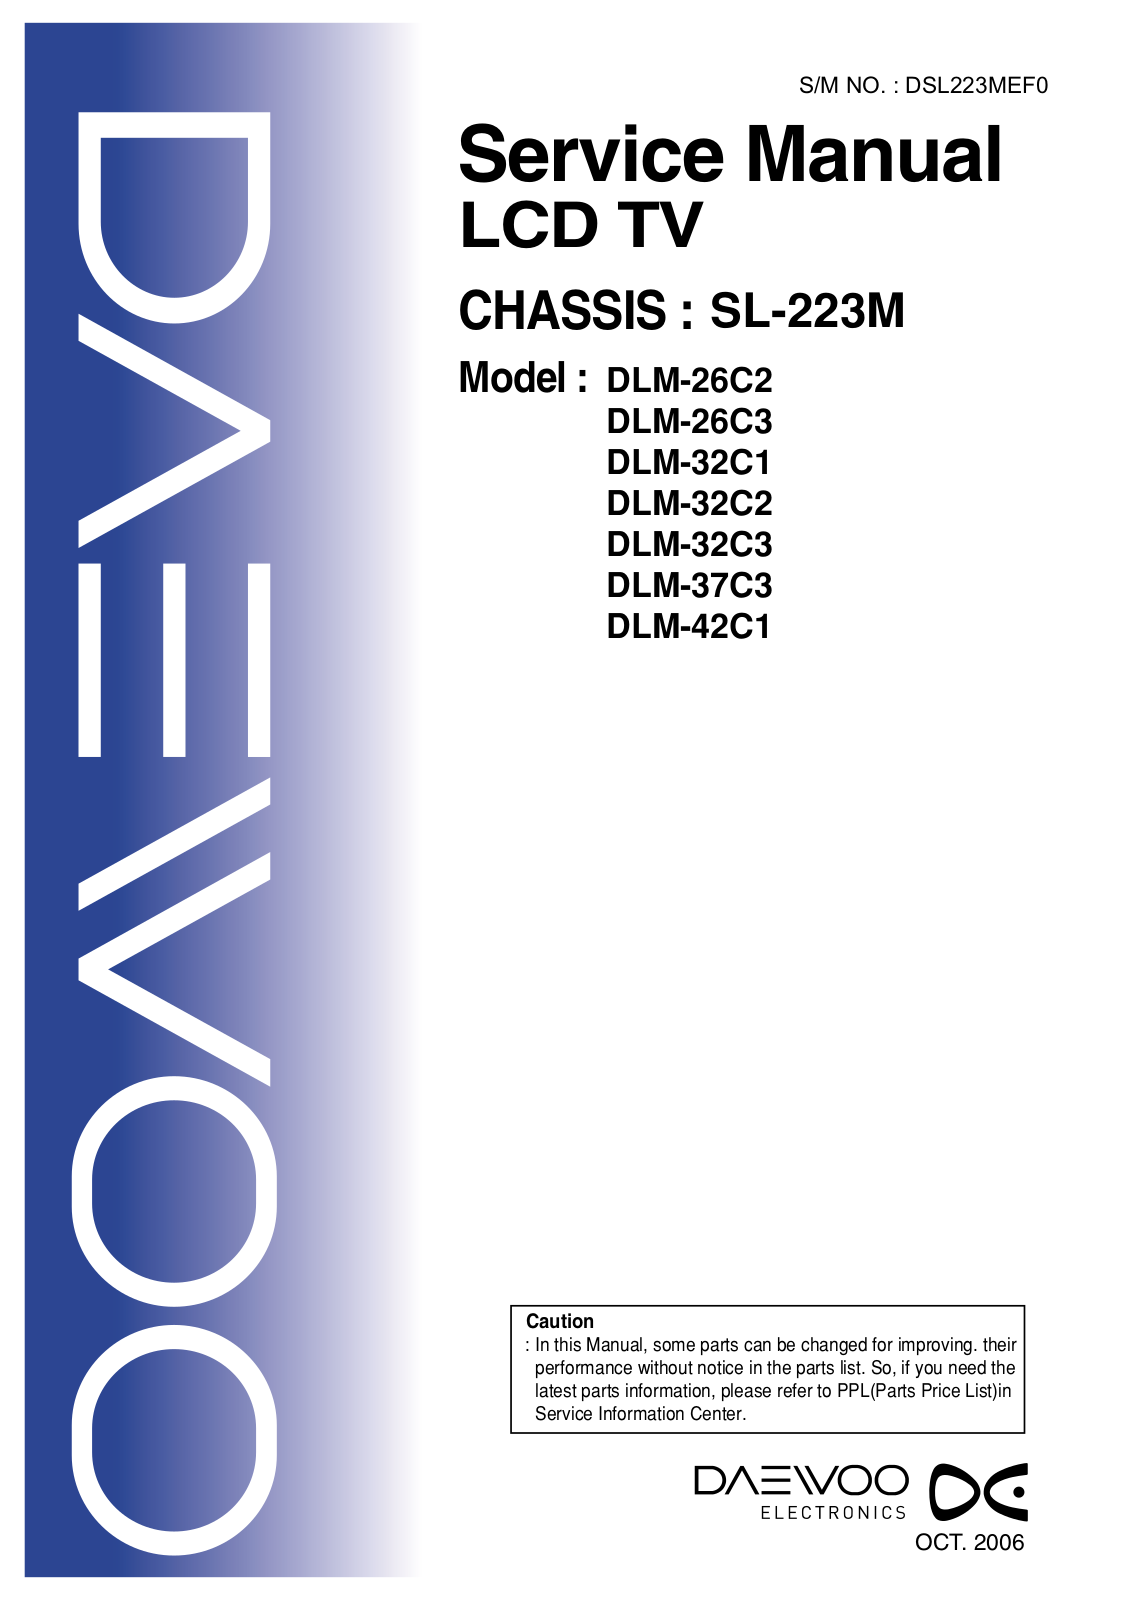 Daewoo DLM-42C1 Schematic